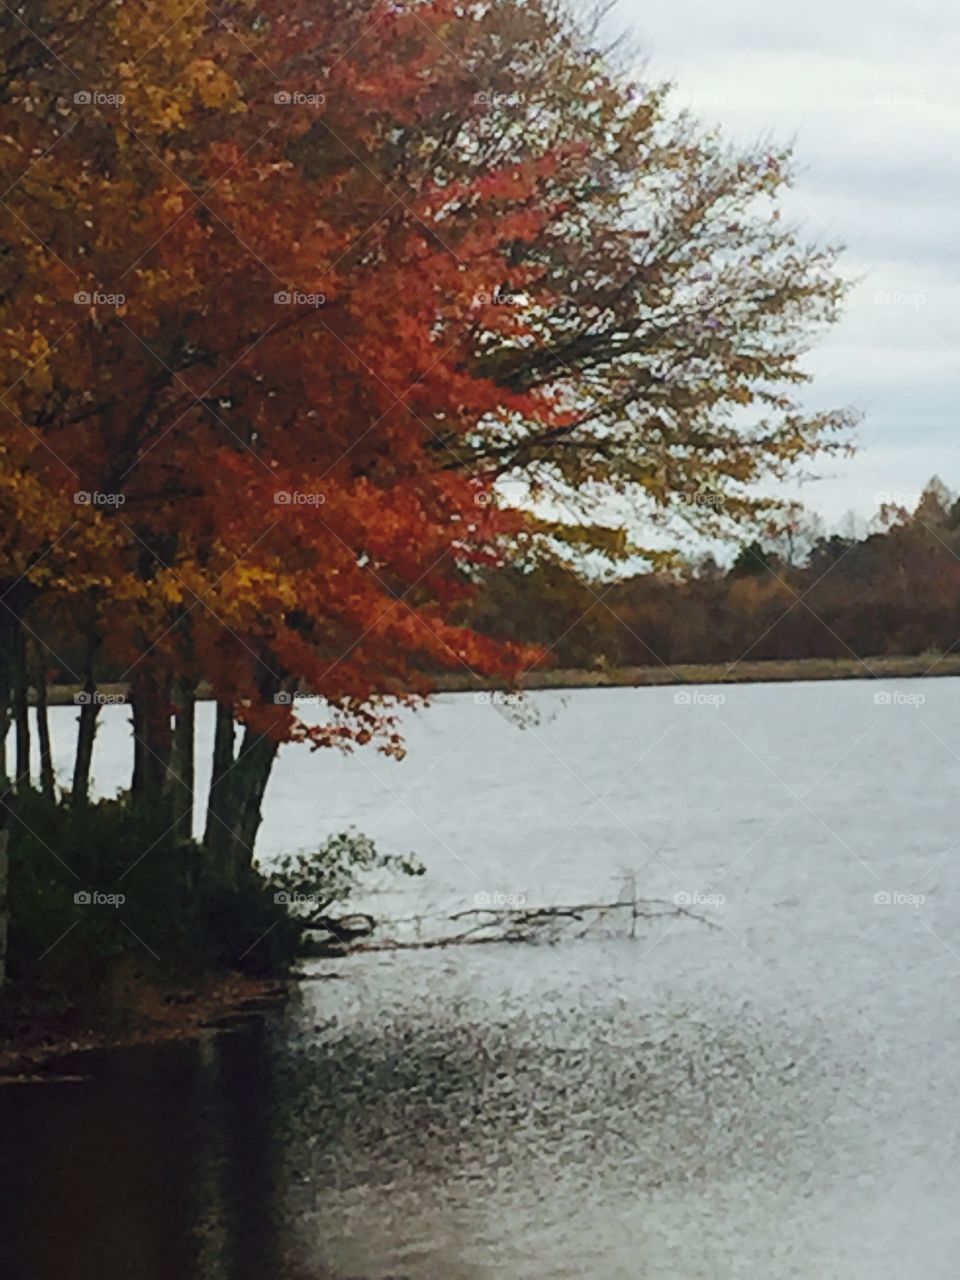 Serene fall lake scene